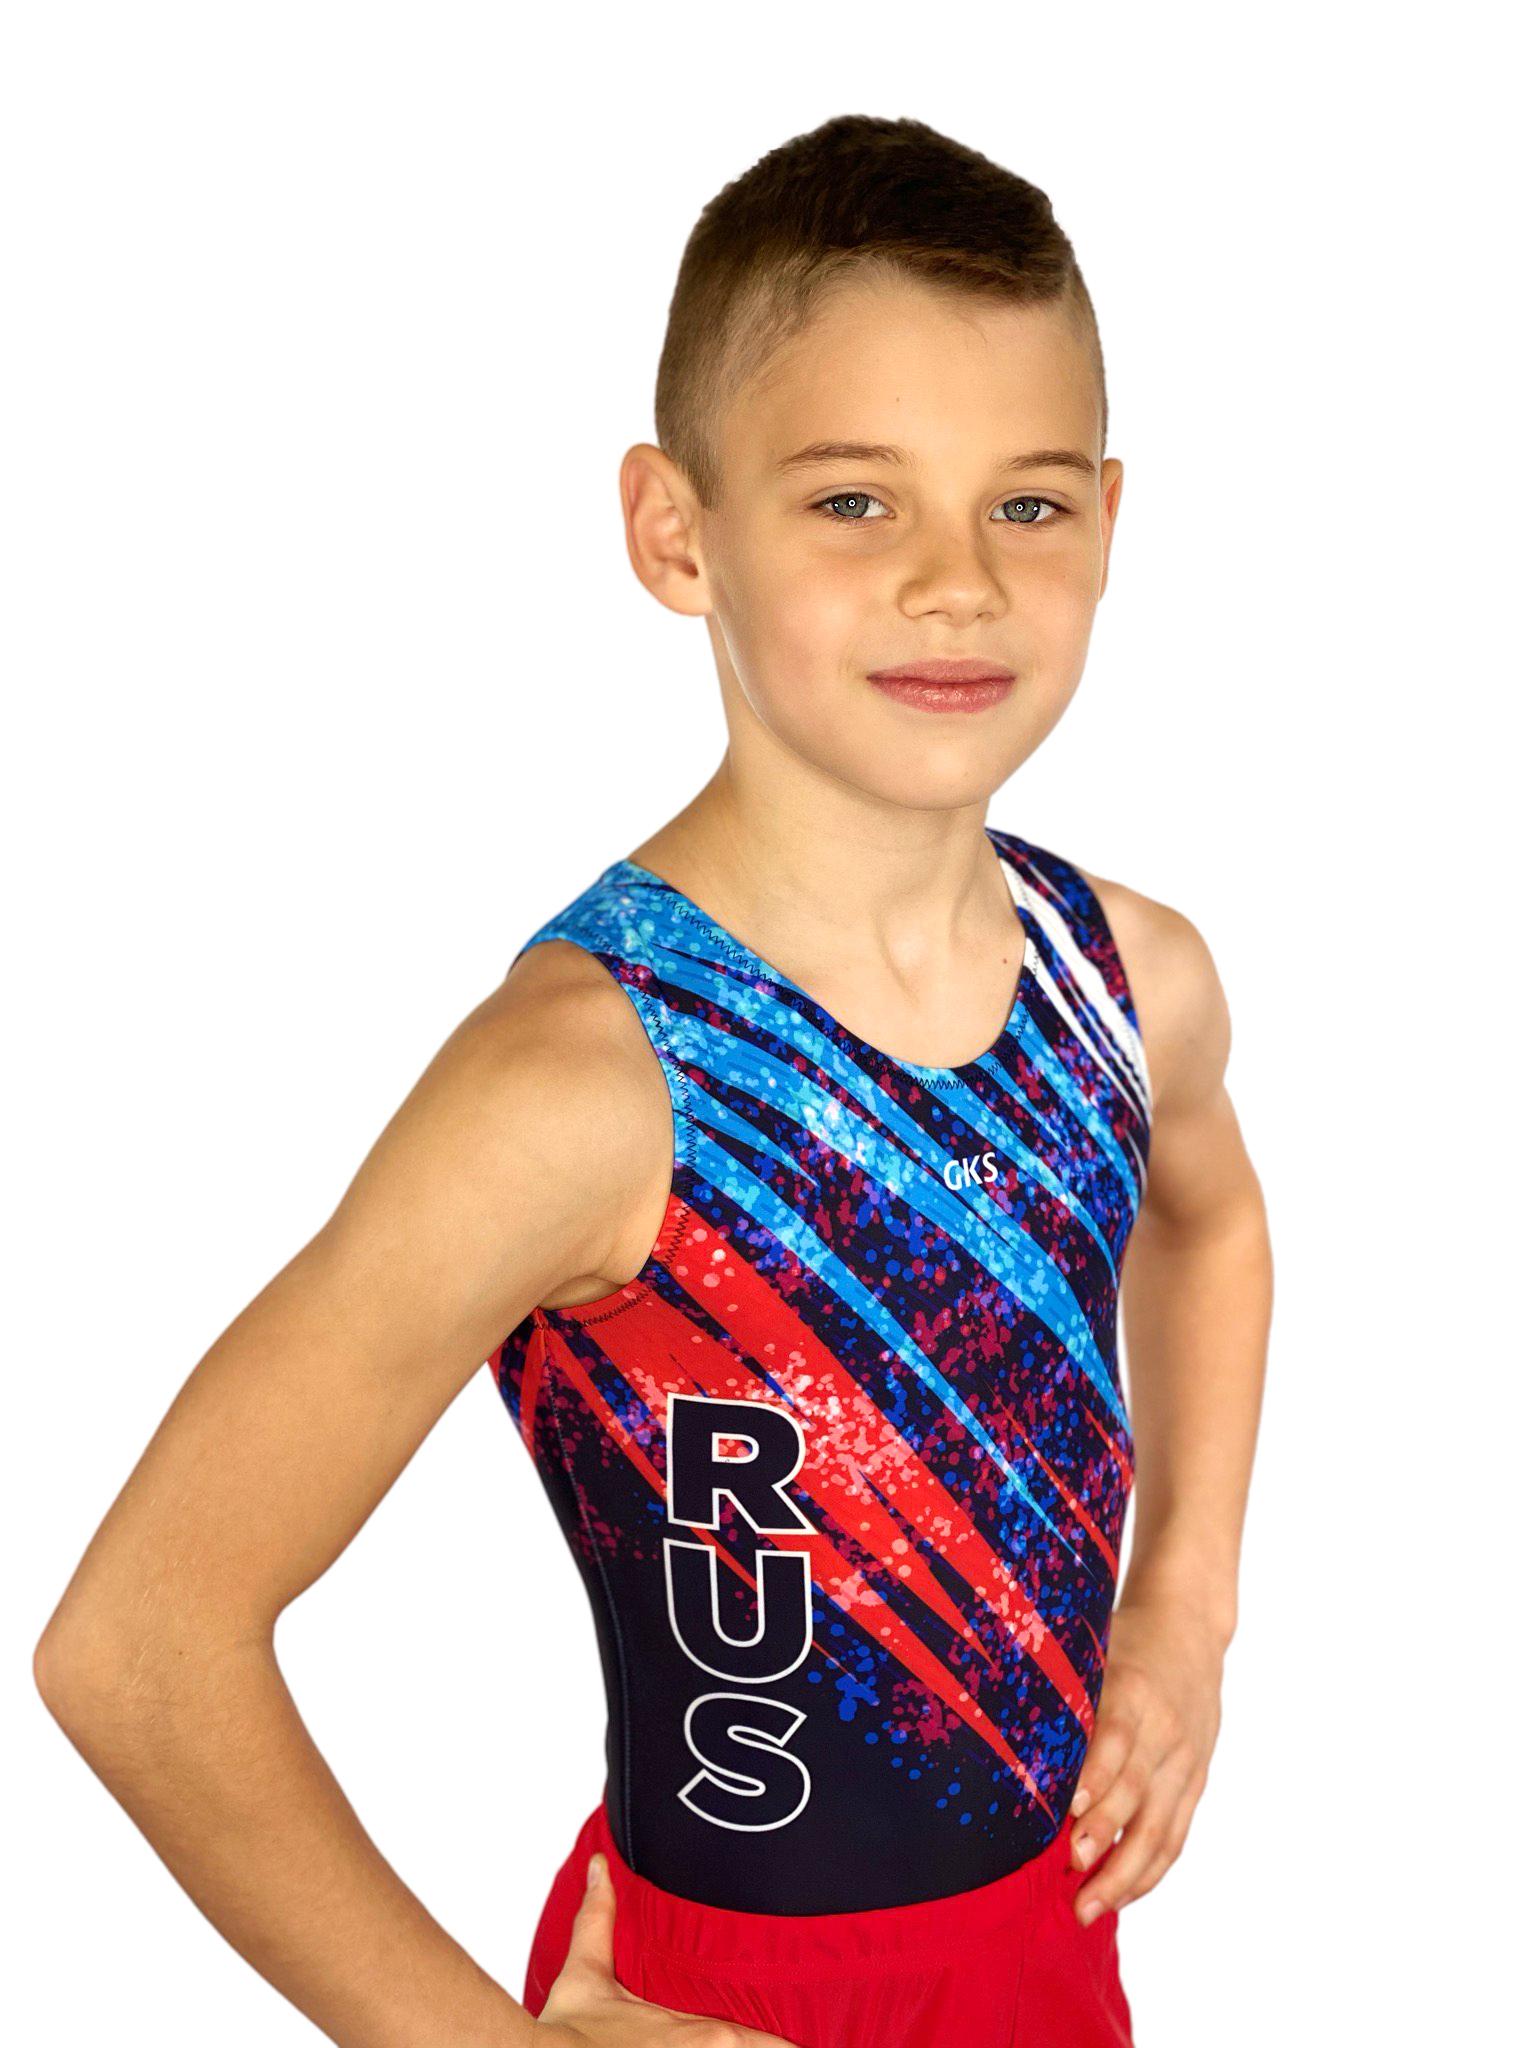 Купальник мужской для спортивной гимнастики GK Sport RUS 201-13 черный с красно-синим рисунком без рукава